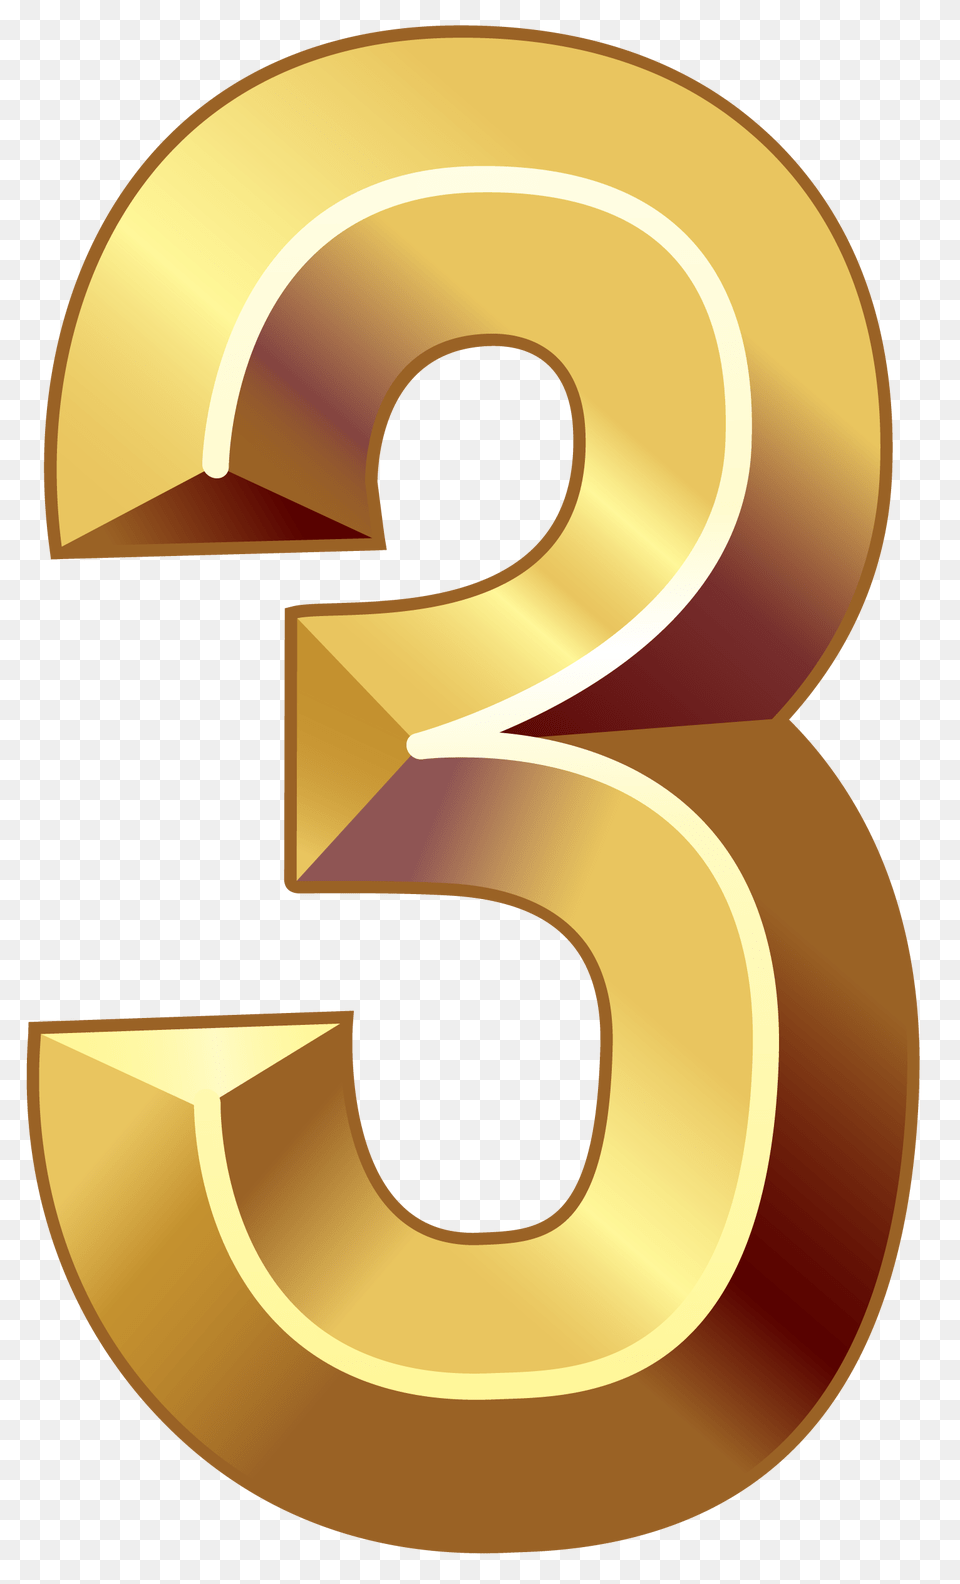 Number Clipart Gold Number 3 Gold Number 3, Symbol, Text, Disk Free Transparent Png